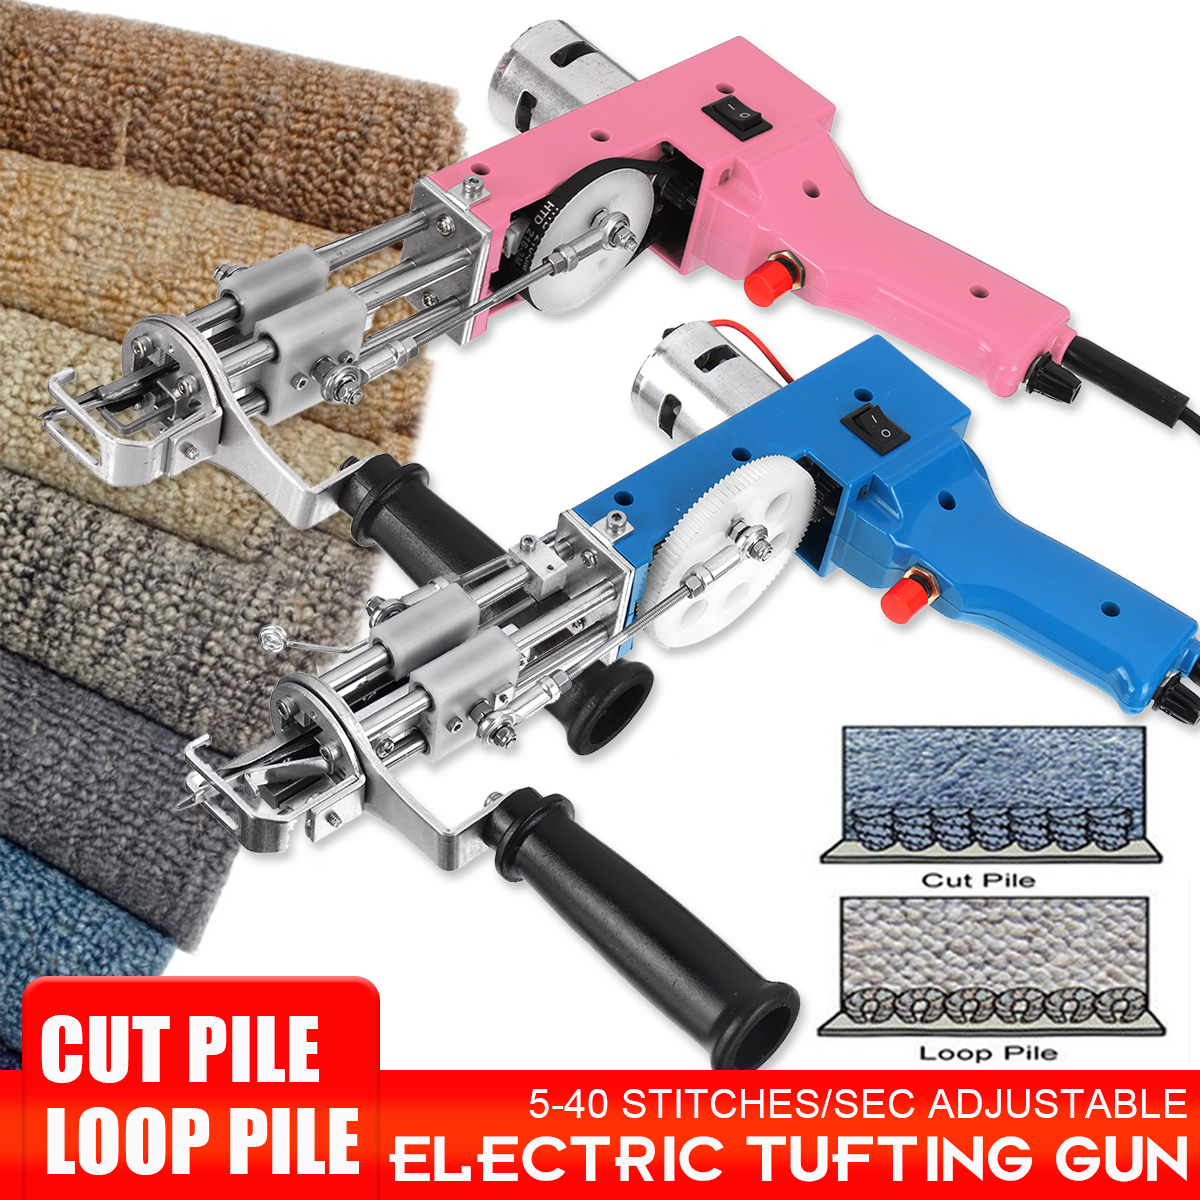 10000-rmin-Electric-Carpet-Tufting-Guns-CutLoop-Pile-Weaving-Flocking-Machines-1891055-1